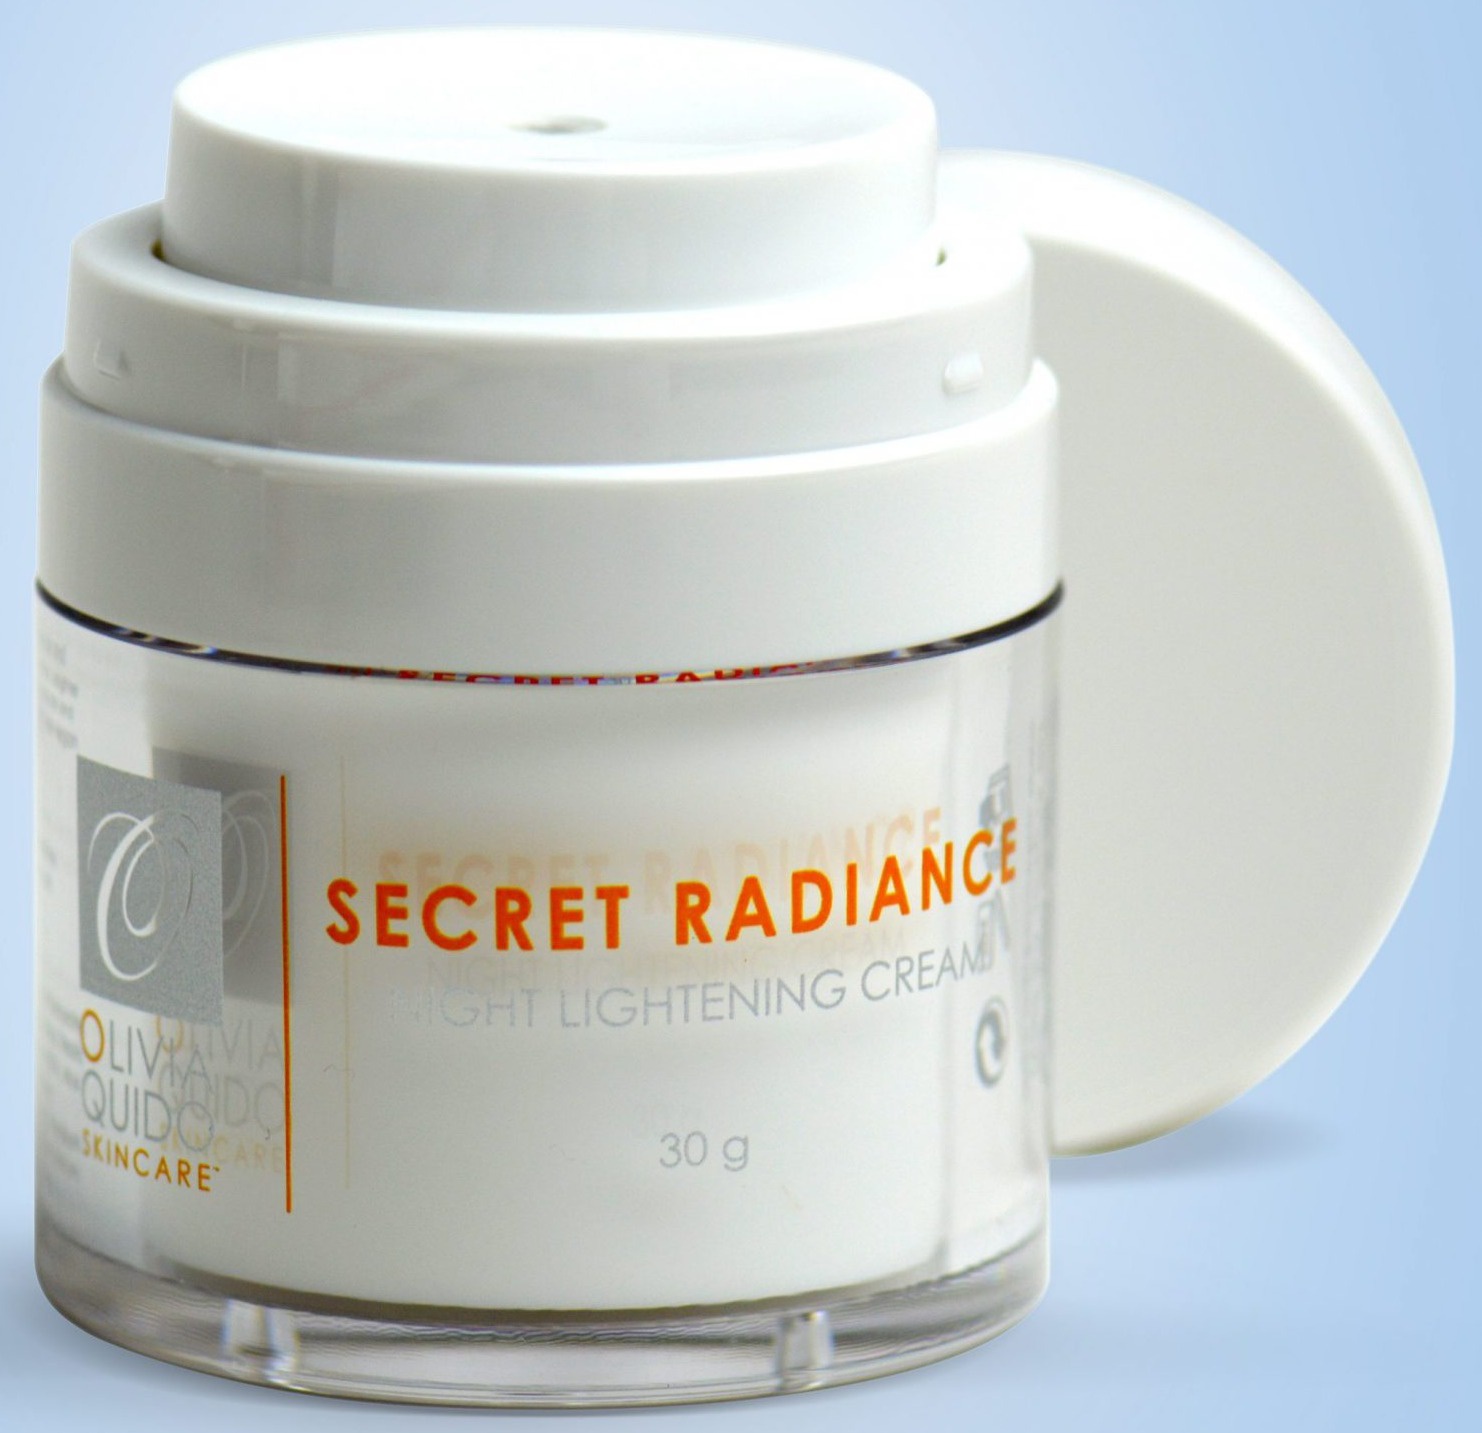 O Skin Care Secret Radiance